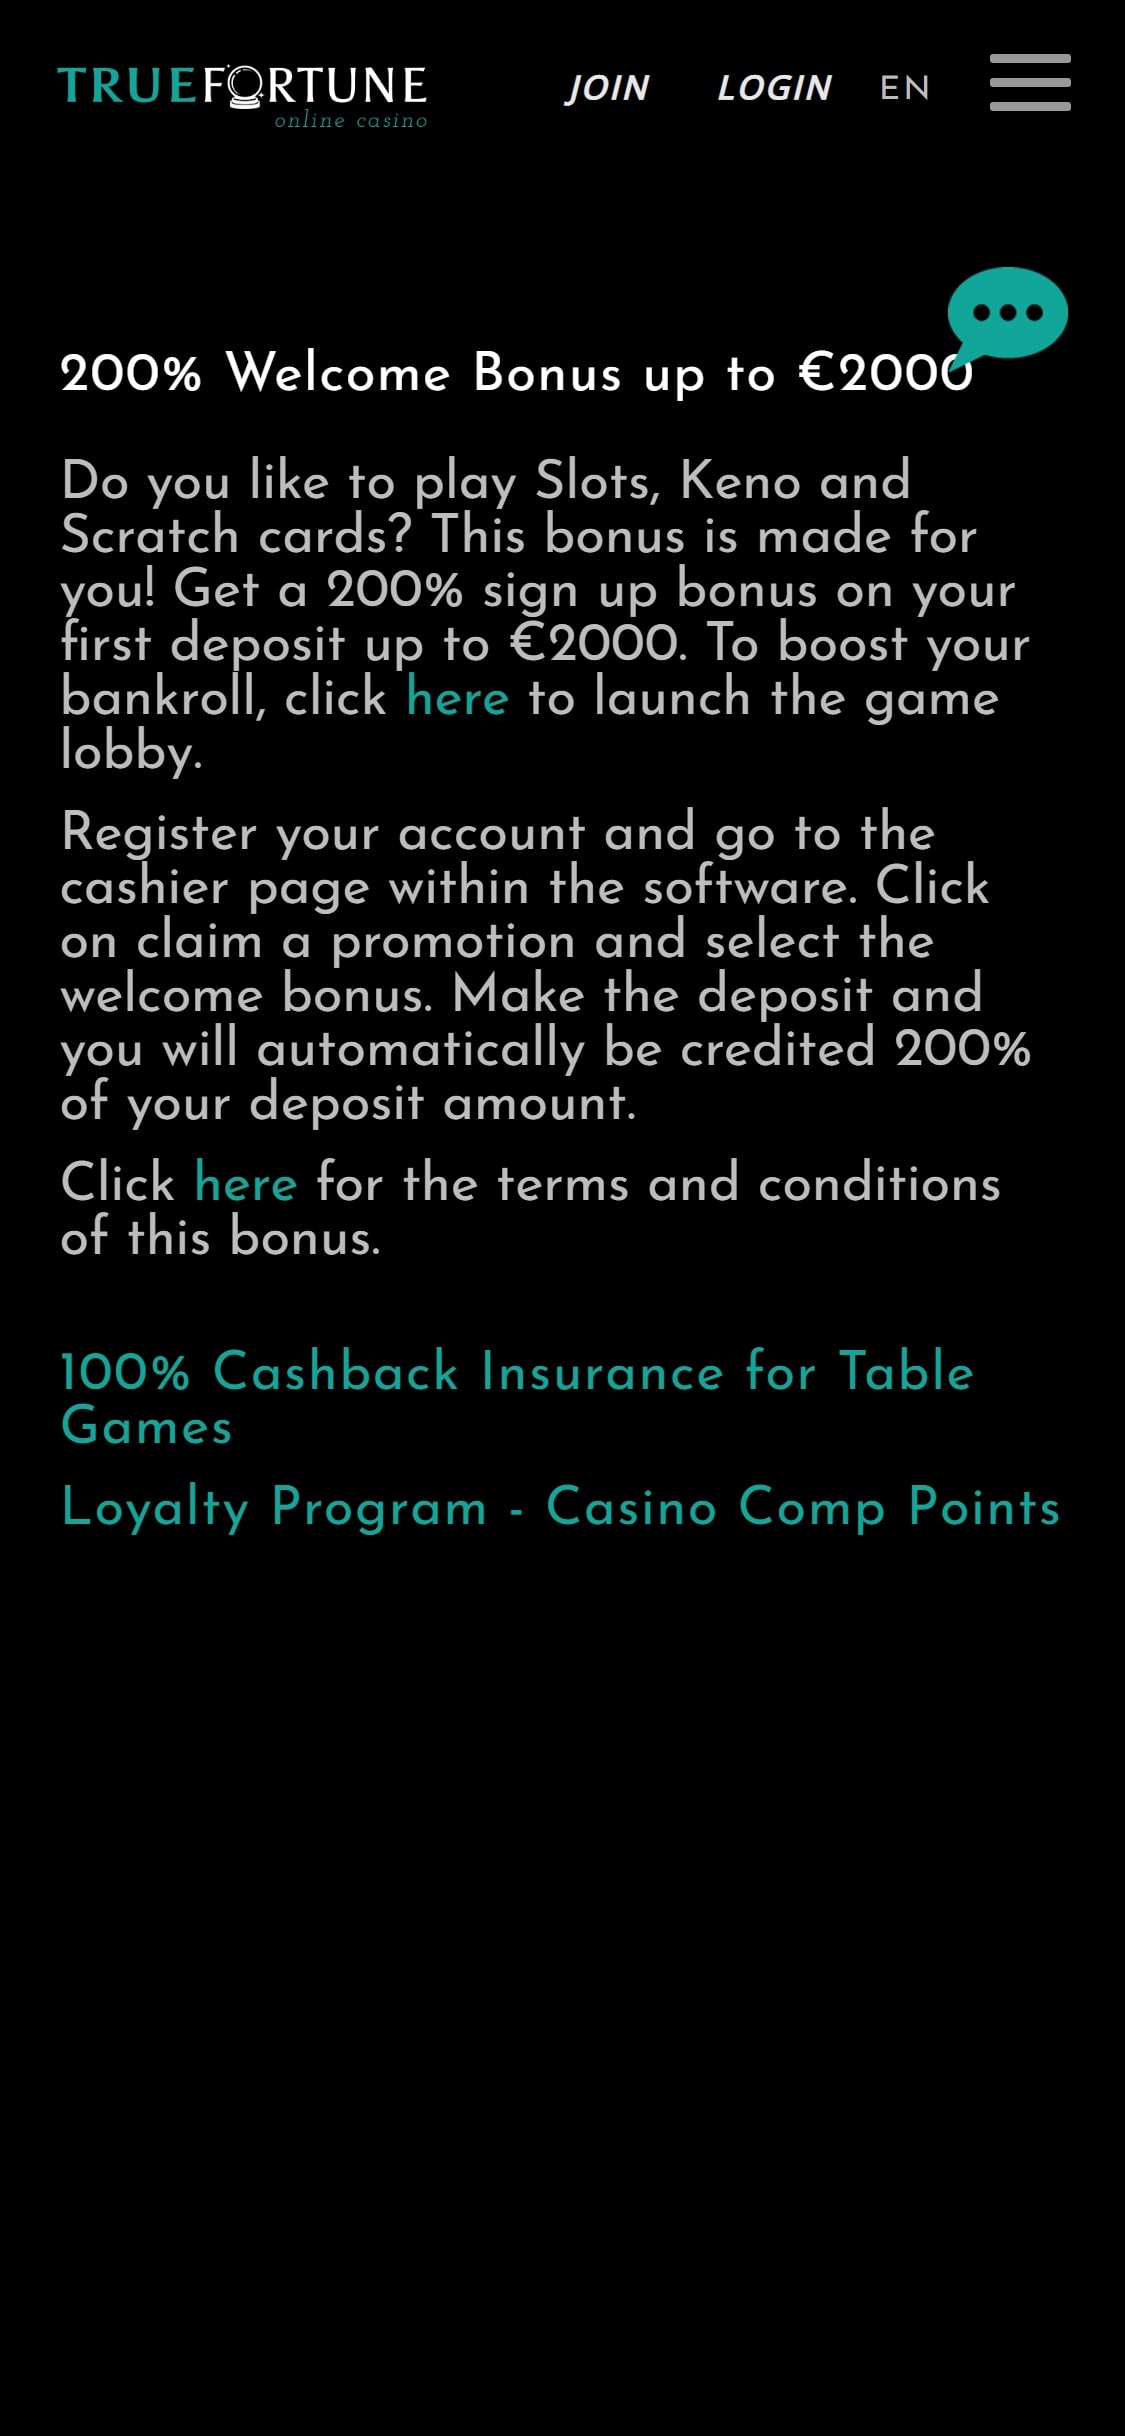 True Fortune Casino Mobile No Deposit Bonus Review